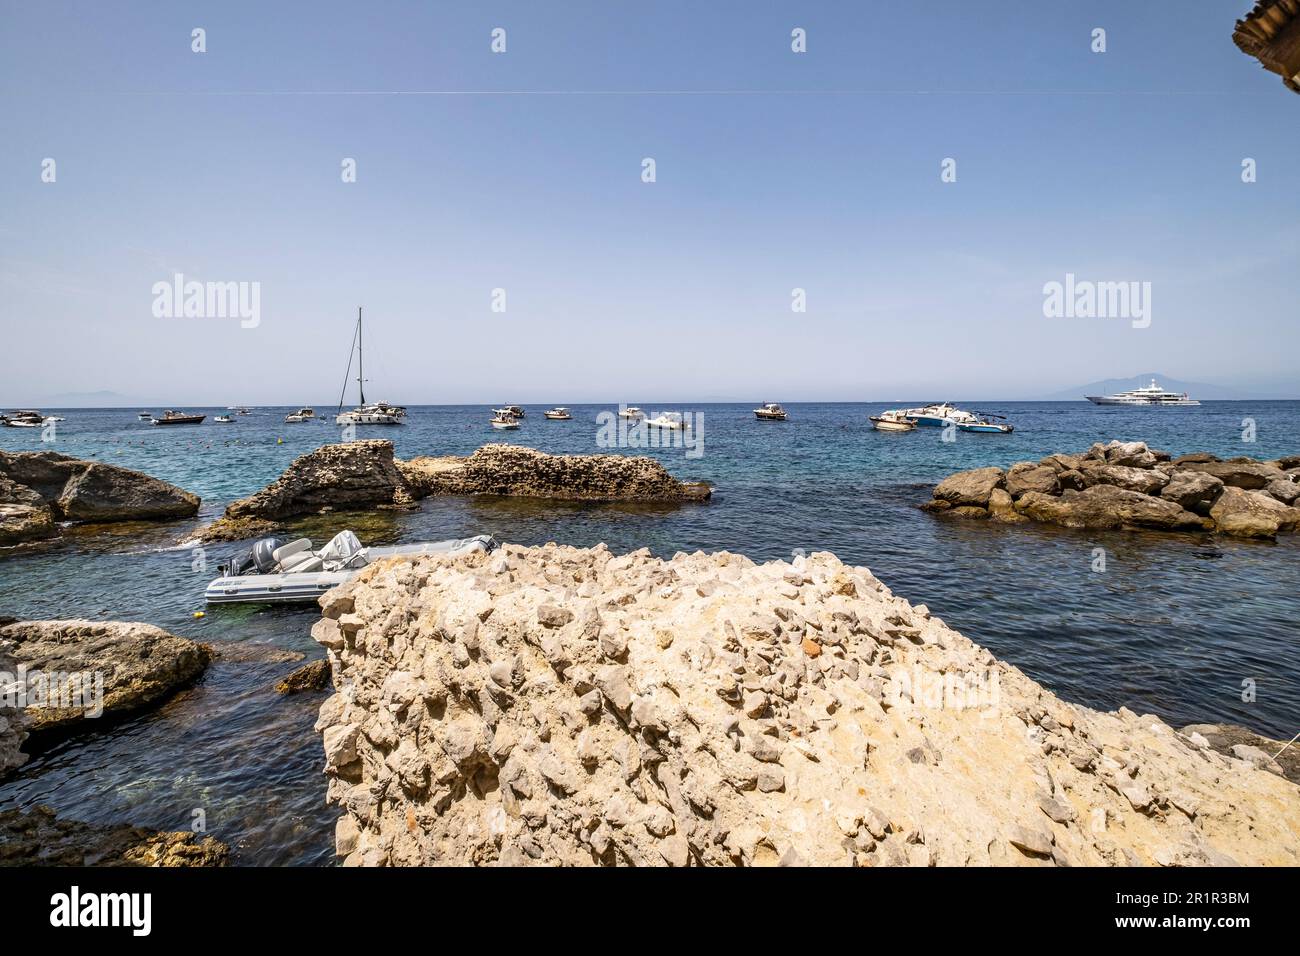 La Canzone del Mare bathing establishment on Capri, Capri Island, Gulf of Naples, Campania, Italy, Europe Stock Photo